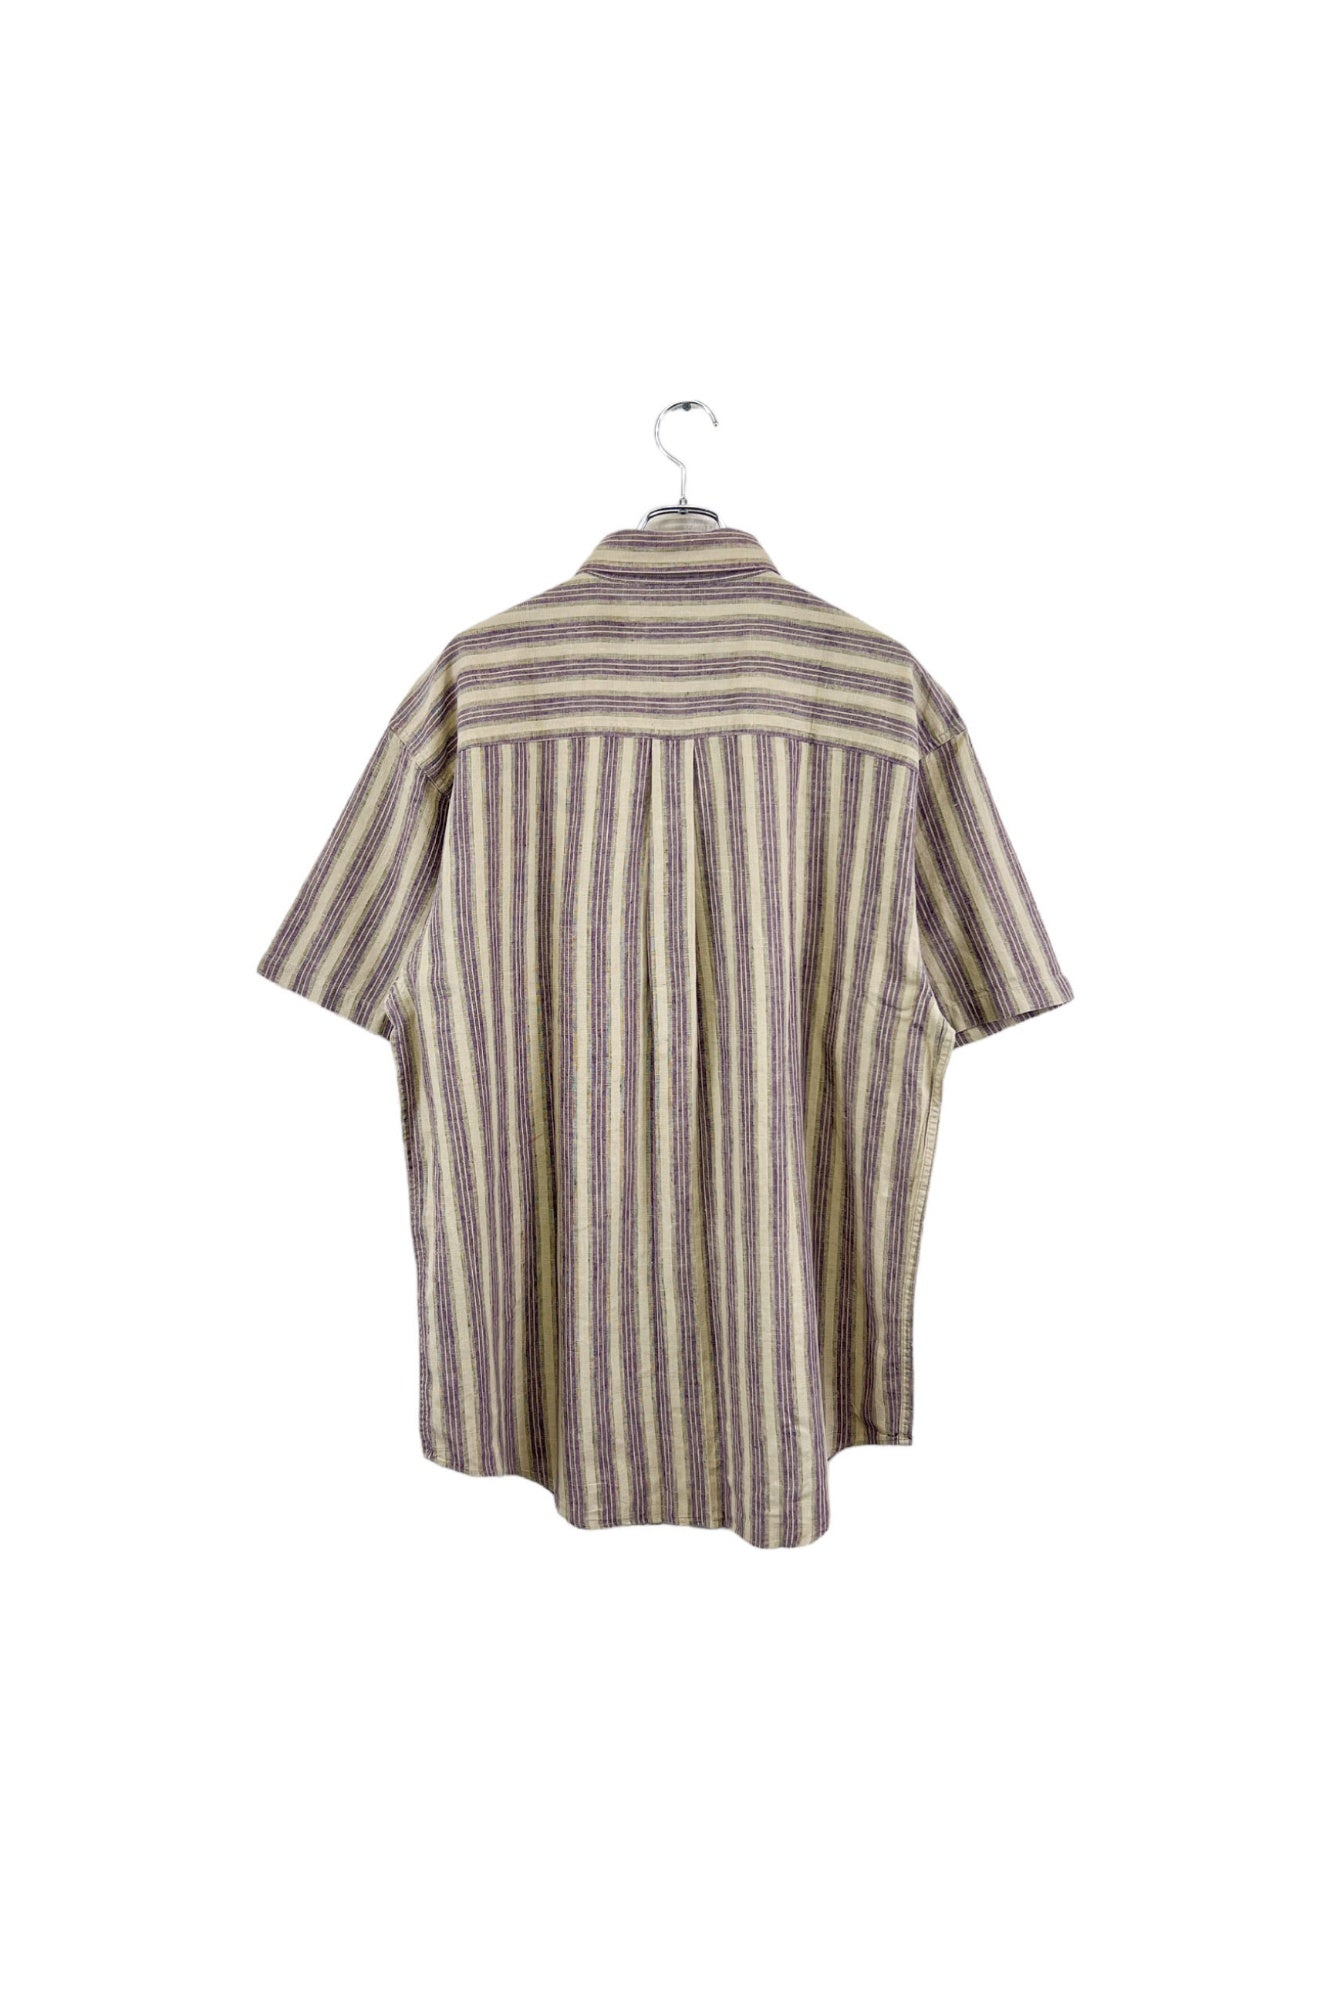 LLBean striped shirt